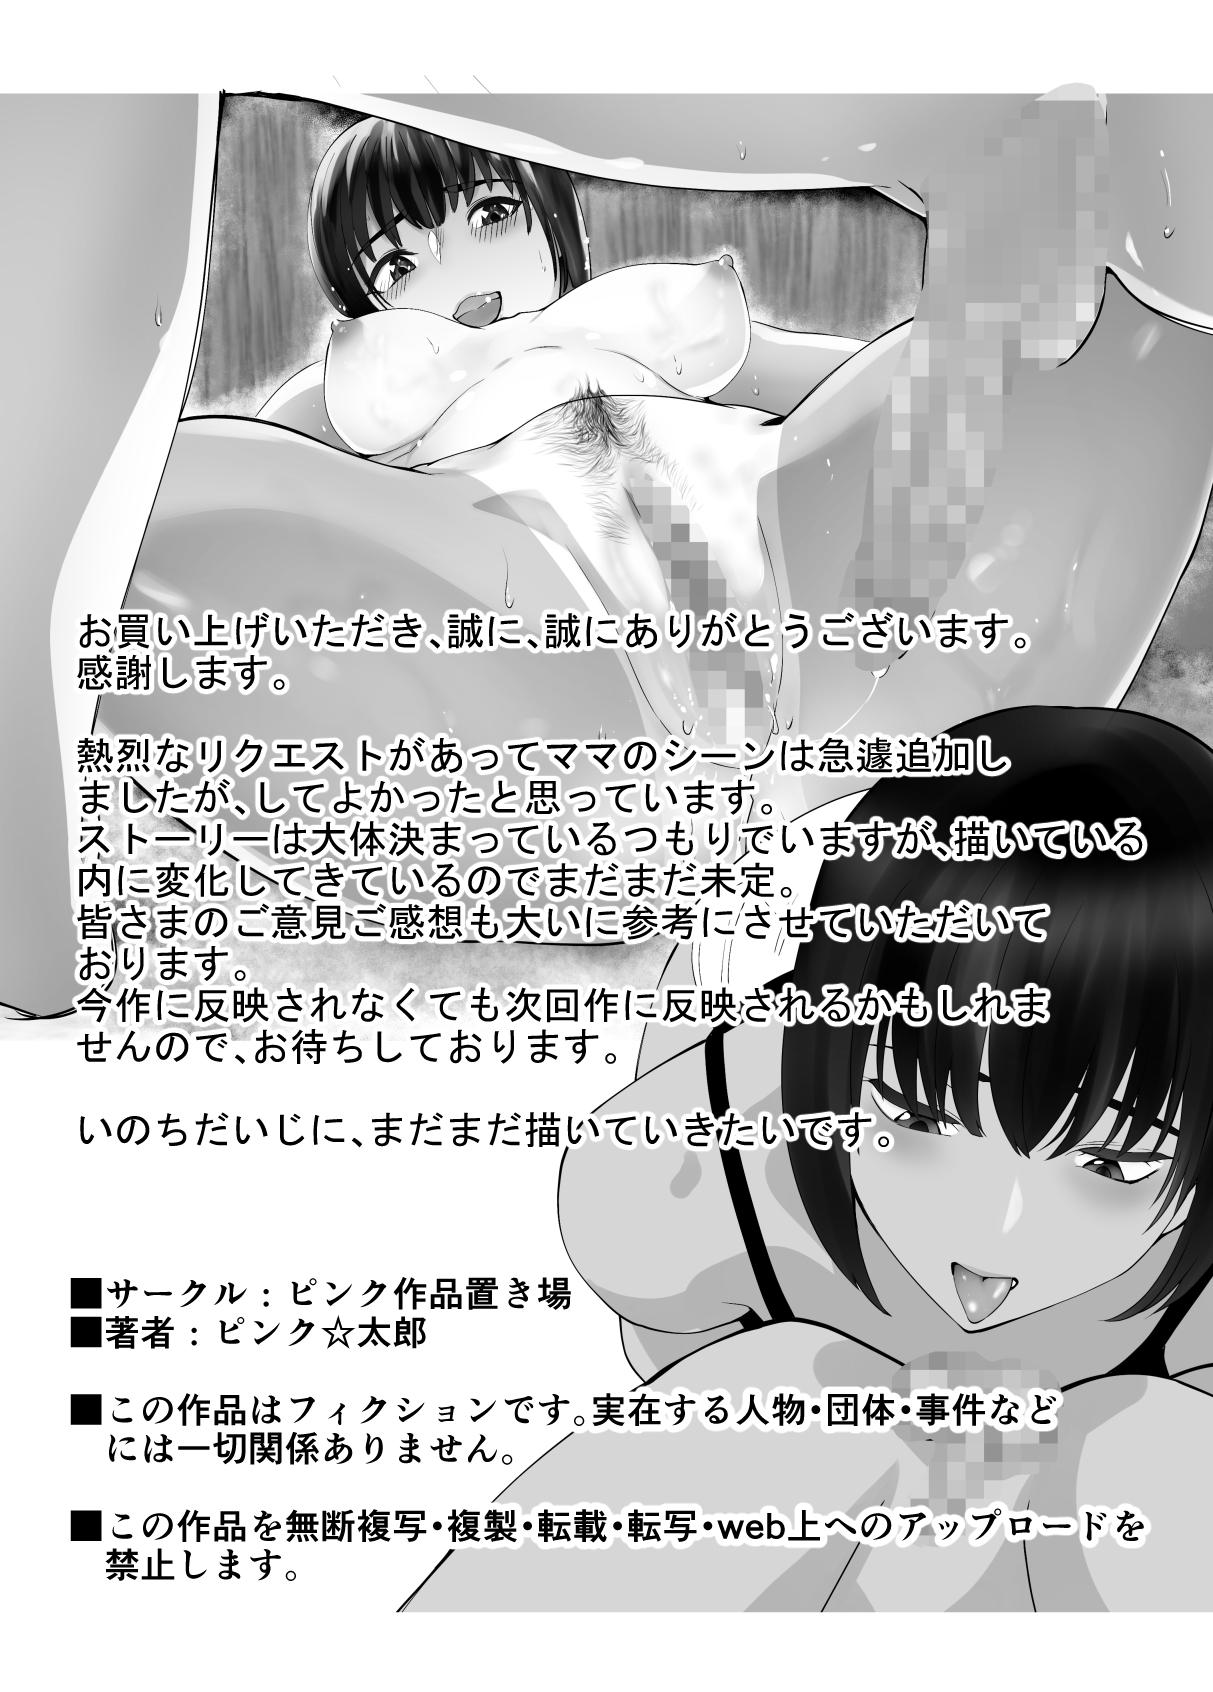 Dominant Osananajimi ga Mama to Yatte Imasu. 6 - Original  - Page 69